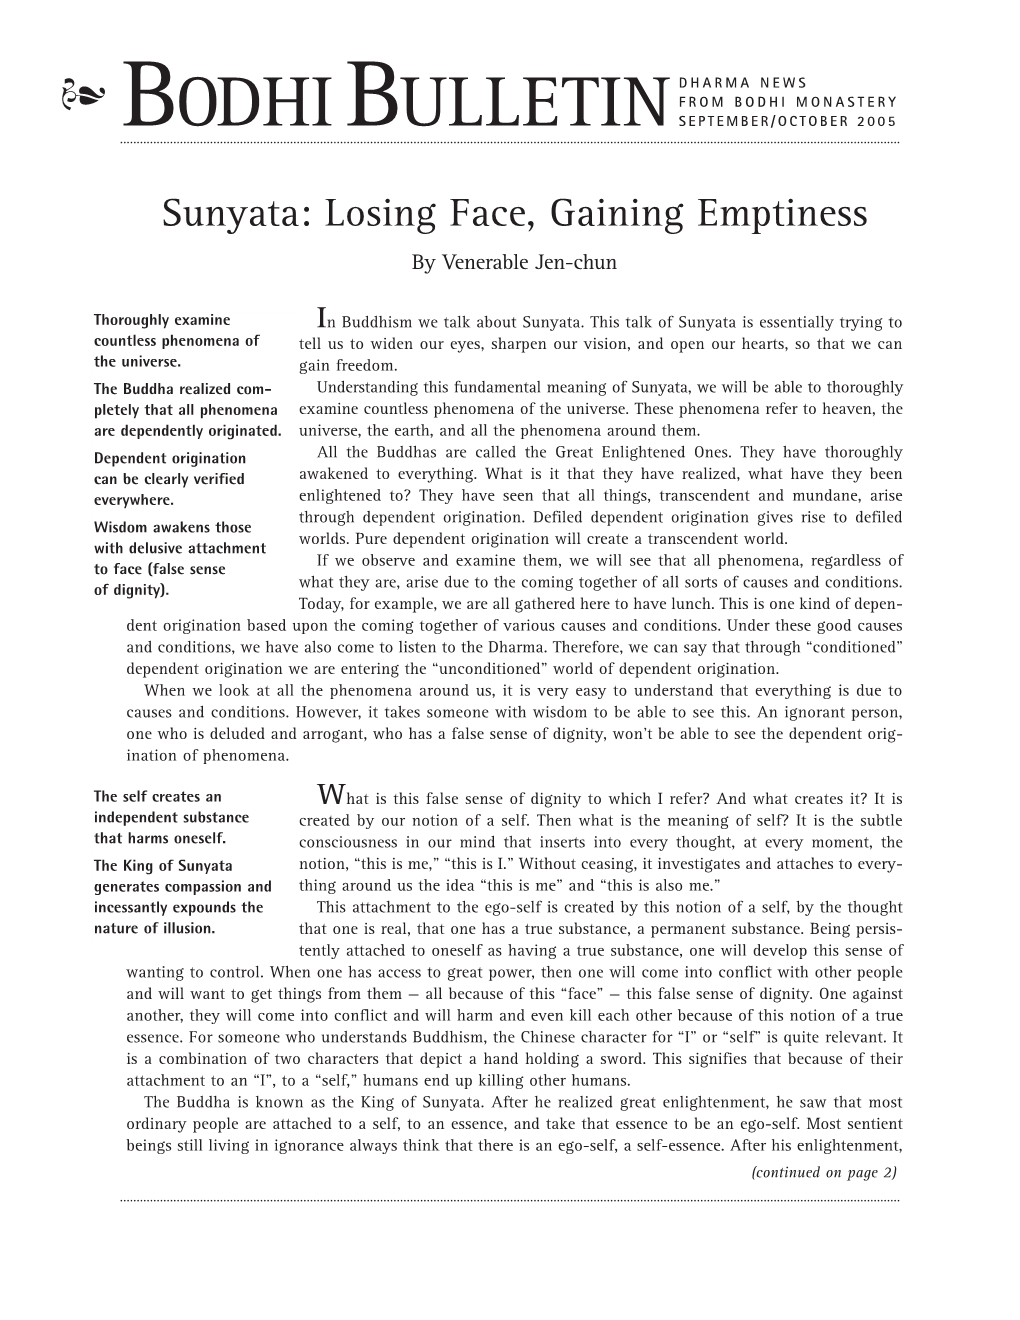 Sunyata: Losing Face, Gaining Emptiness by Venerable Jen-Chun